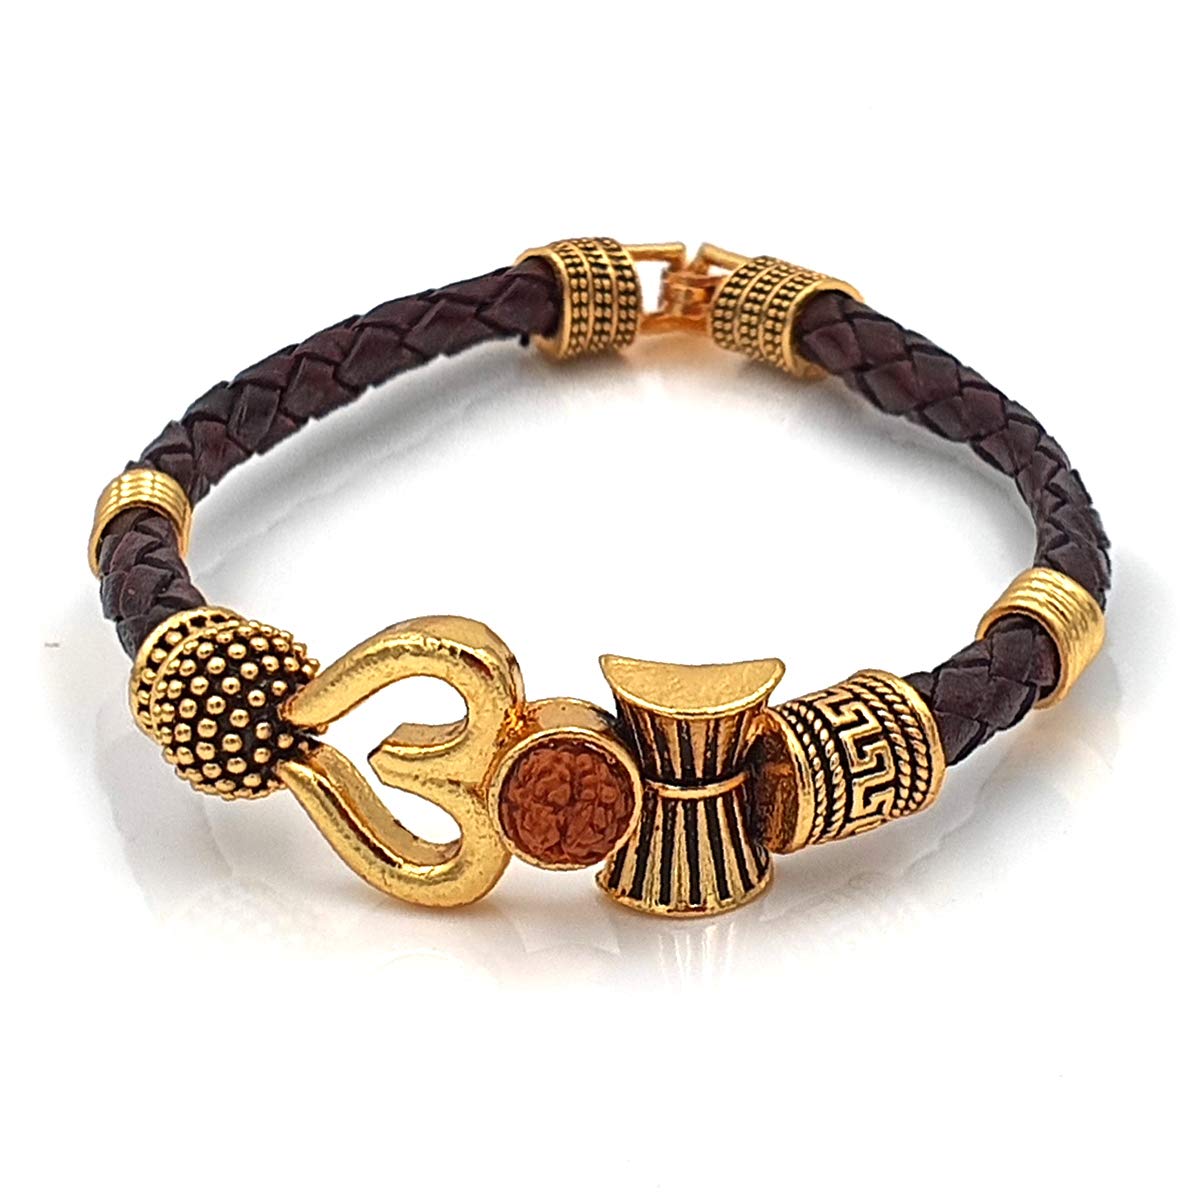 Om ganesh logo design bracelet Rakhi for brothers | Buy Online Bracelet  Rakhi